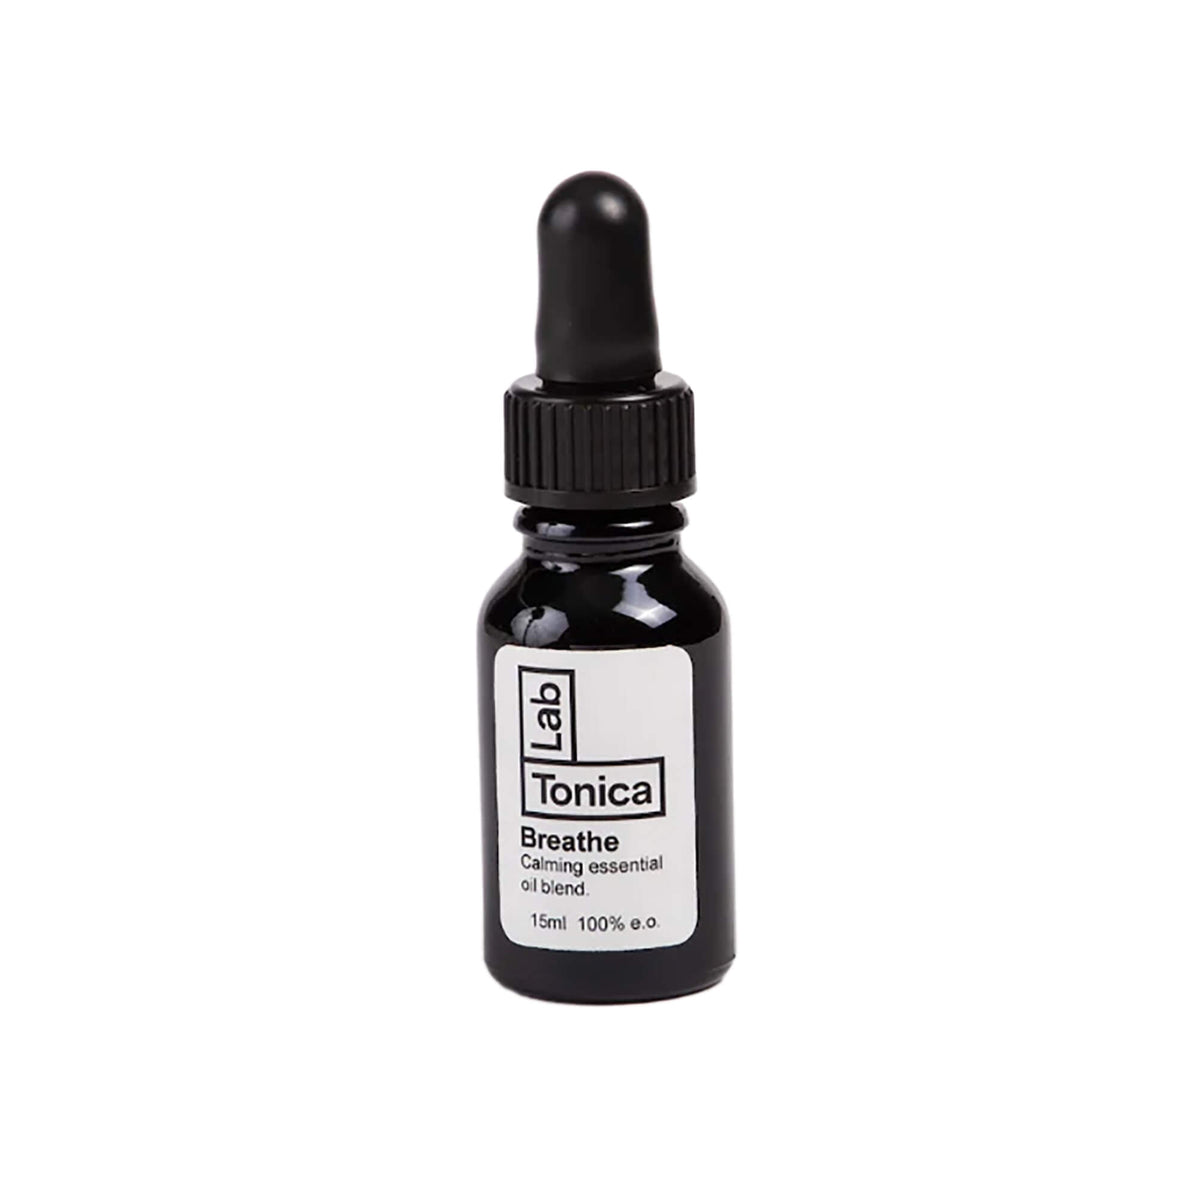 Lab Tonica - Breathe Diffuser Oil (15ml)